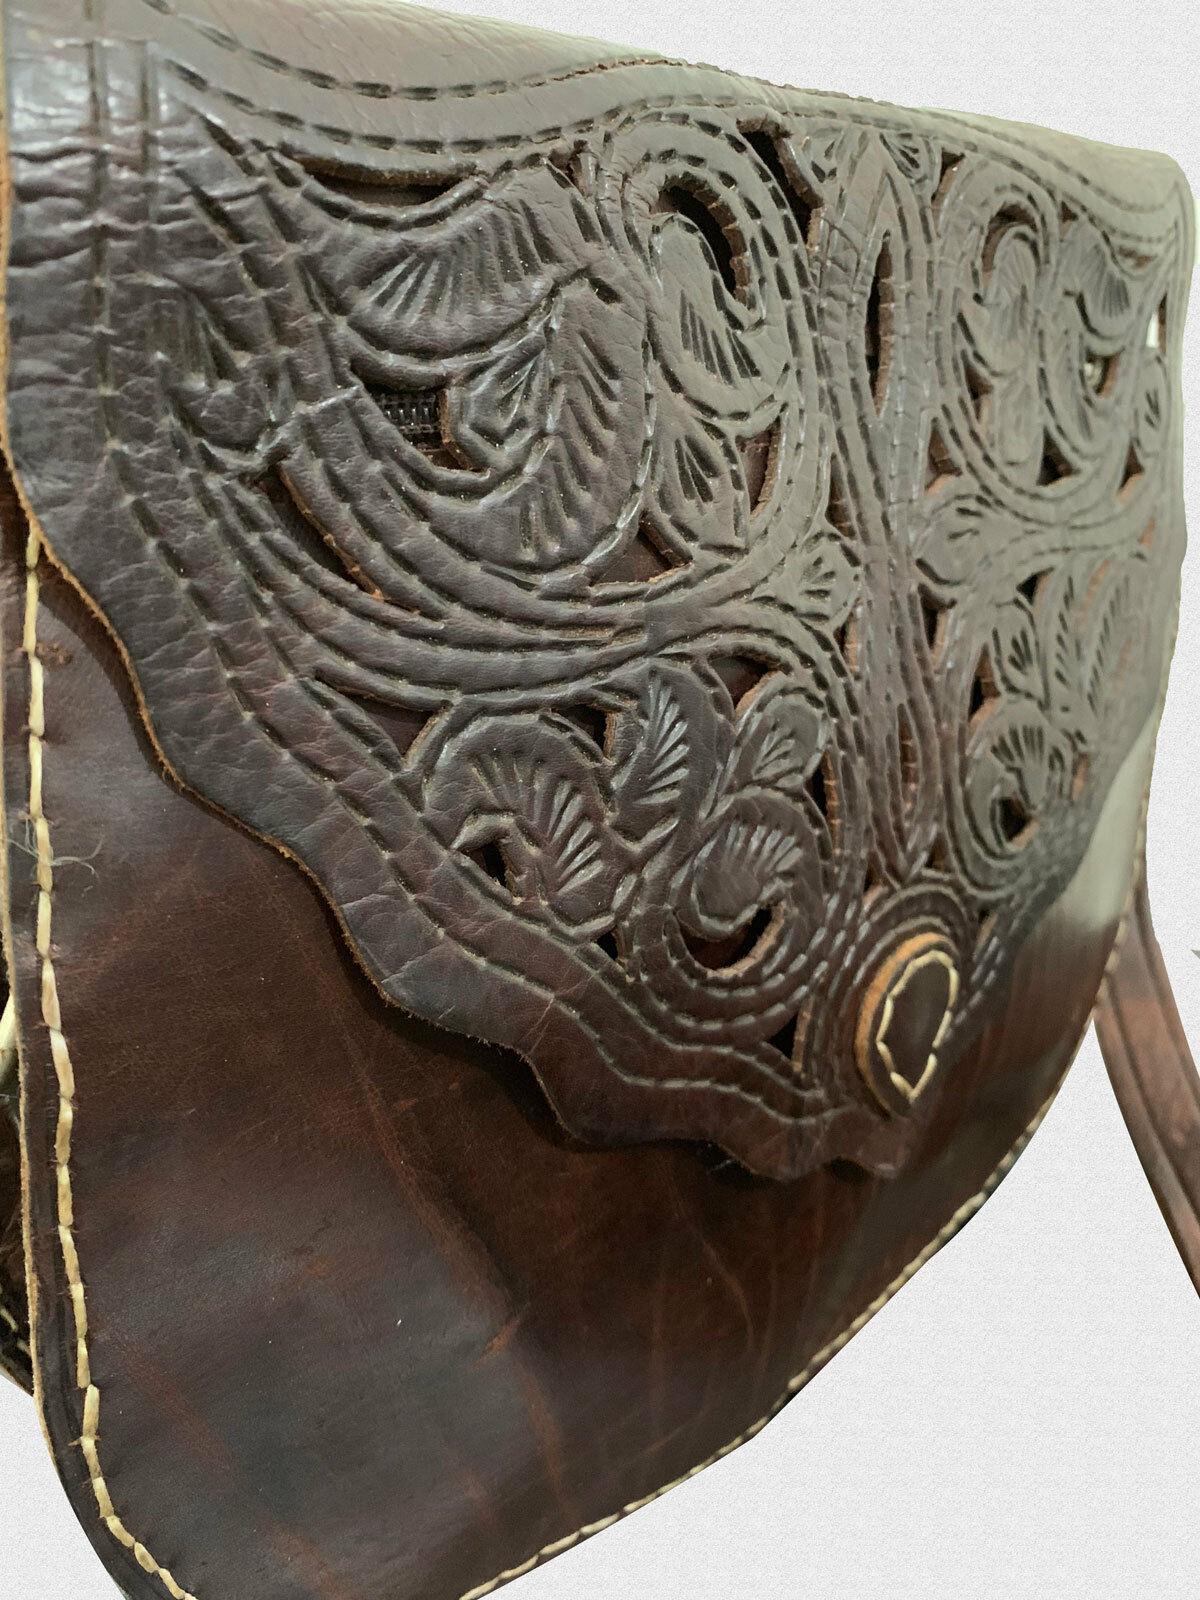 Moroccan Leather Handmade Small Brown Saddler Travel Bag Shoulder Bag - Labreeze